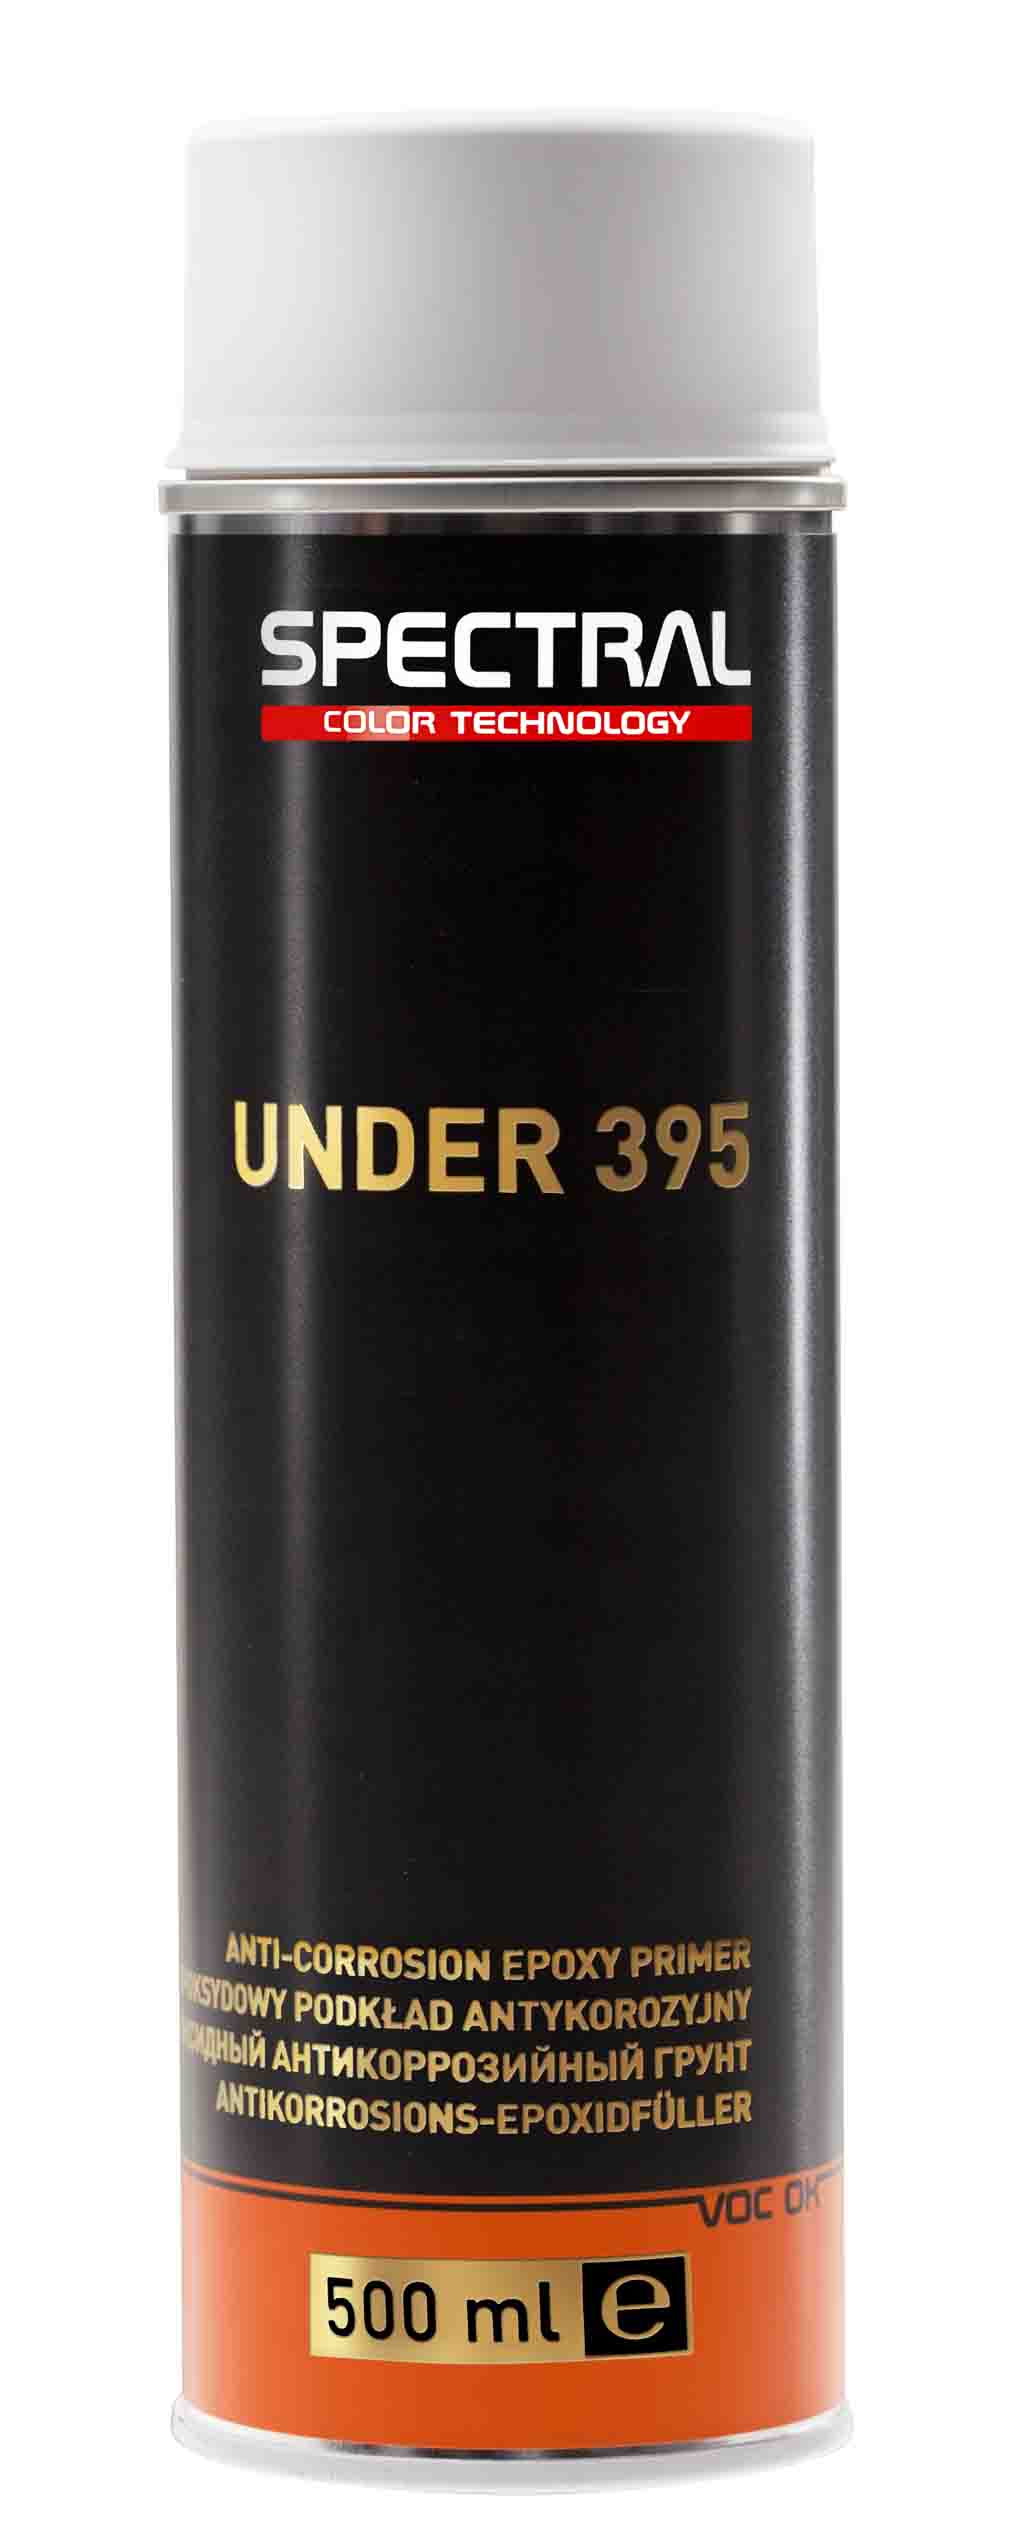 UNDER 395 - Sprayförmiger Antikorrosions-Epoxidfüller